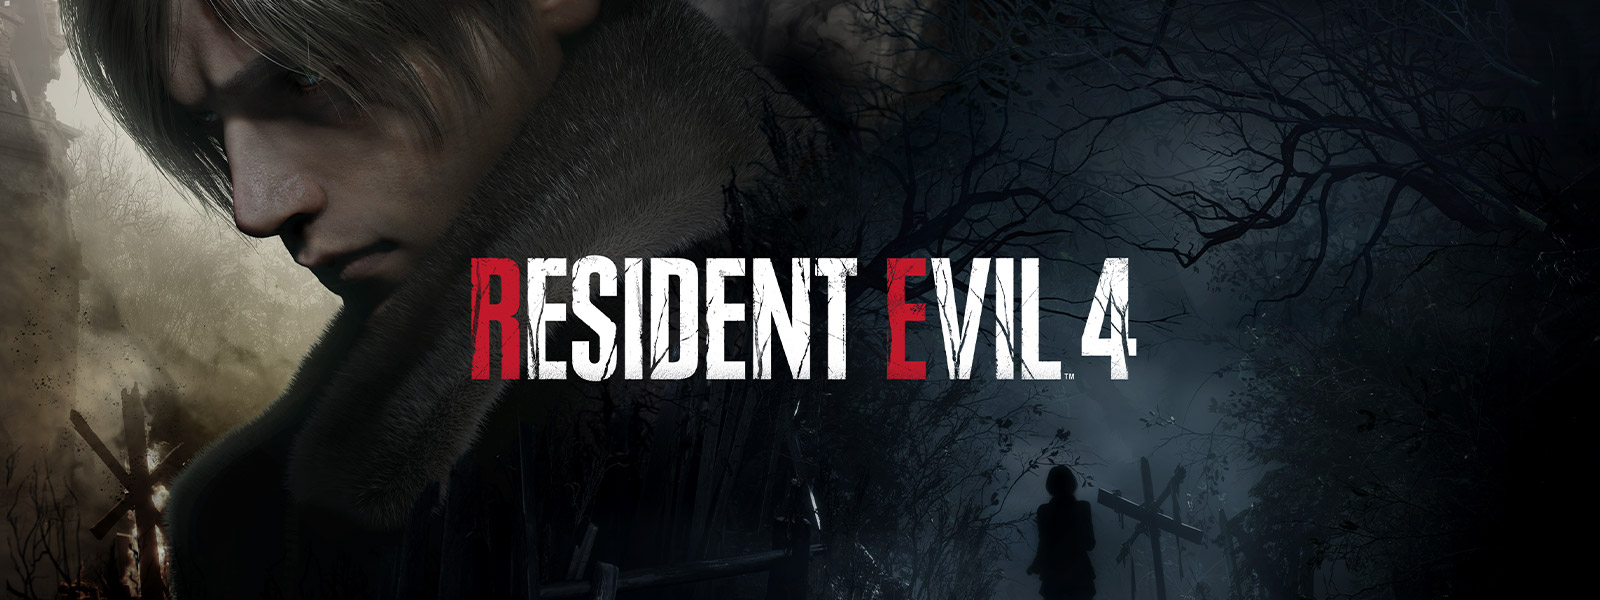 Resident Evil 4, un homme avec les cheveux gris se tourne solennellement en marchant en direction opposée d’une femme sur un sentier forestier sombre et menaçant.